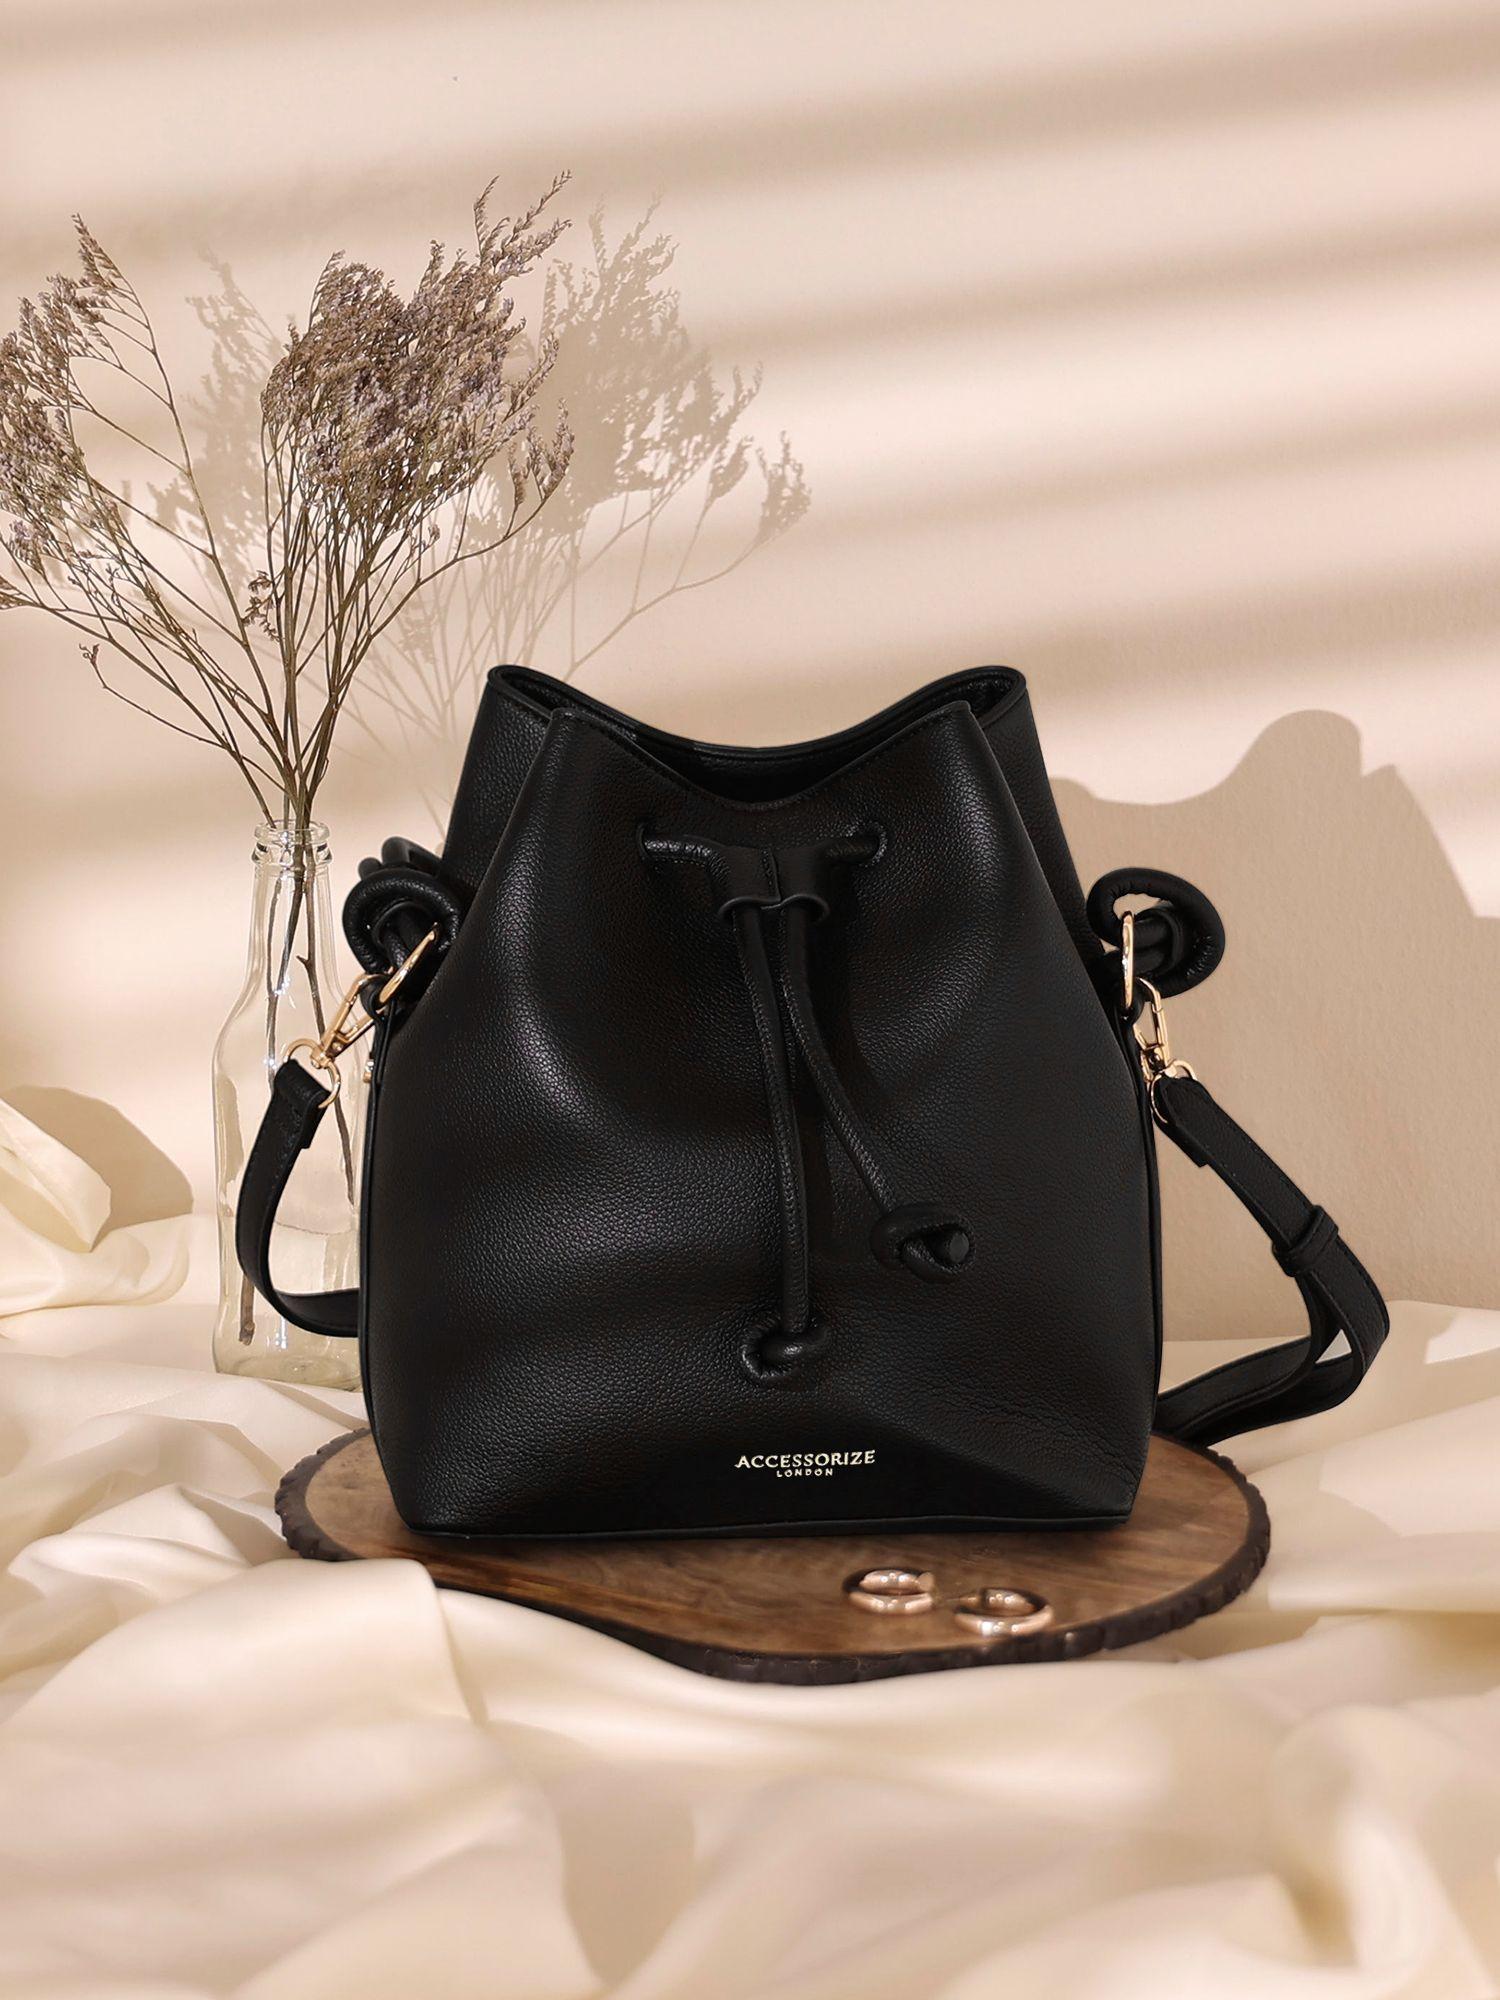 women's black duffle handheld bag